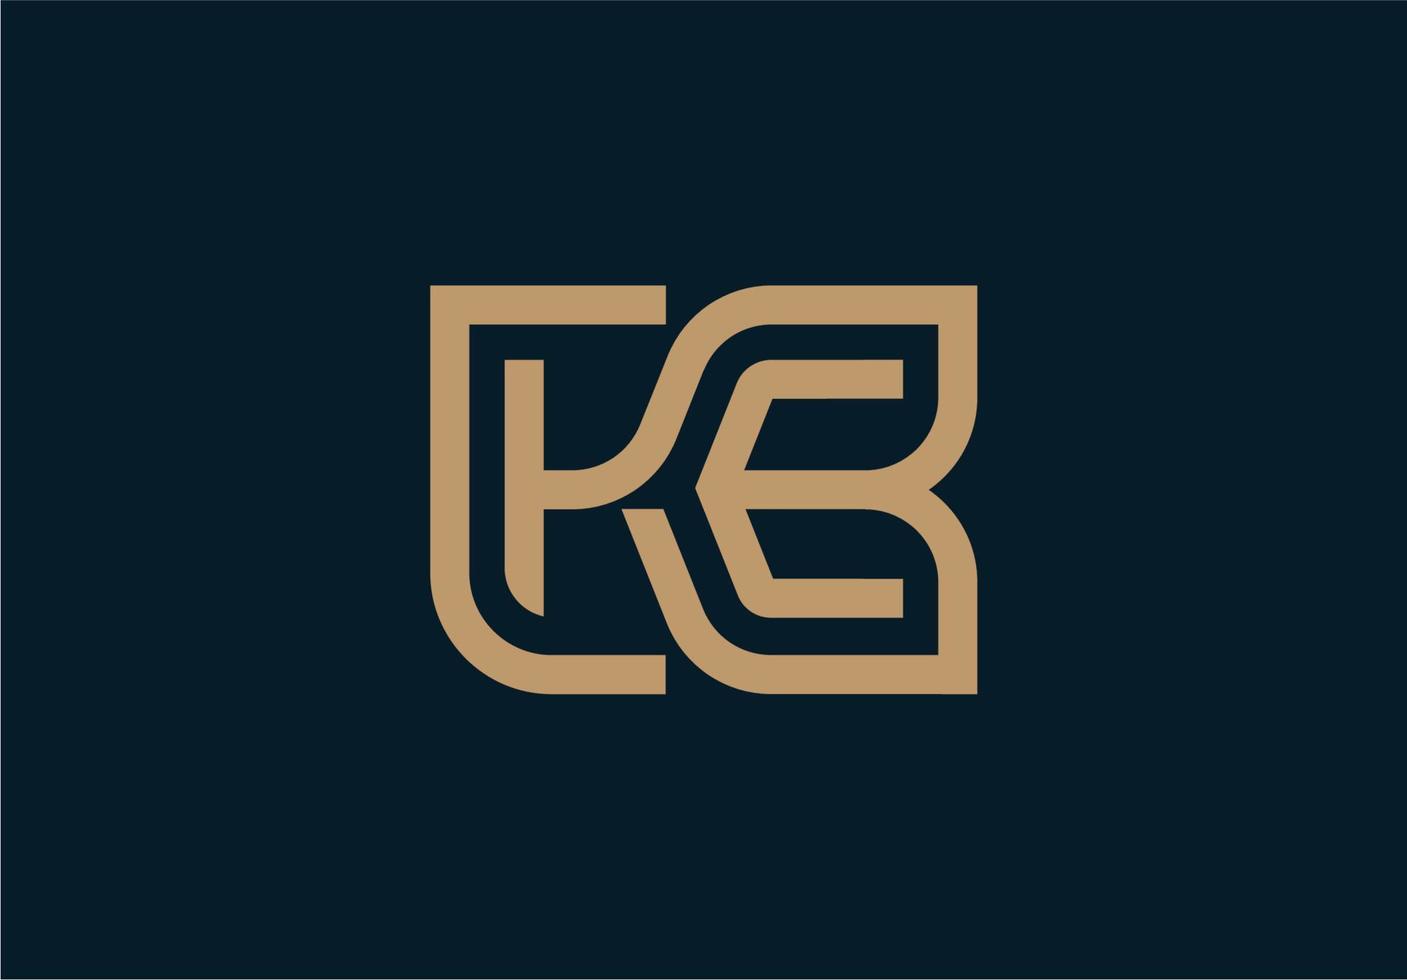 diseño de logotipo kb inicial de monograma de letra de lujo elegante y moderno vector